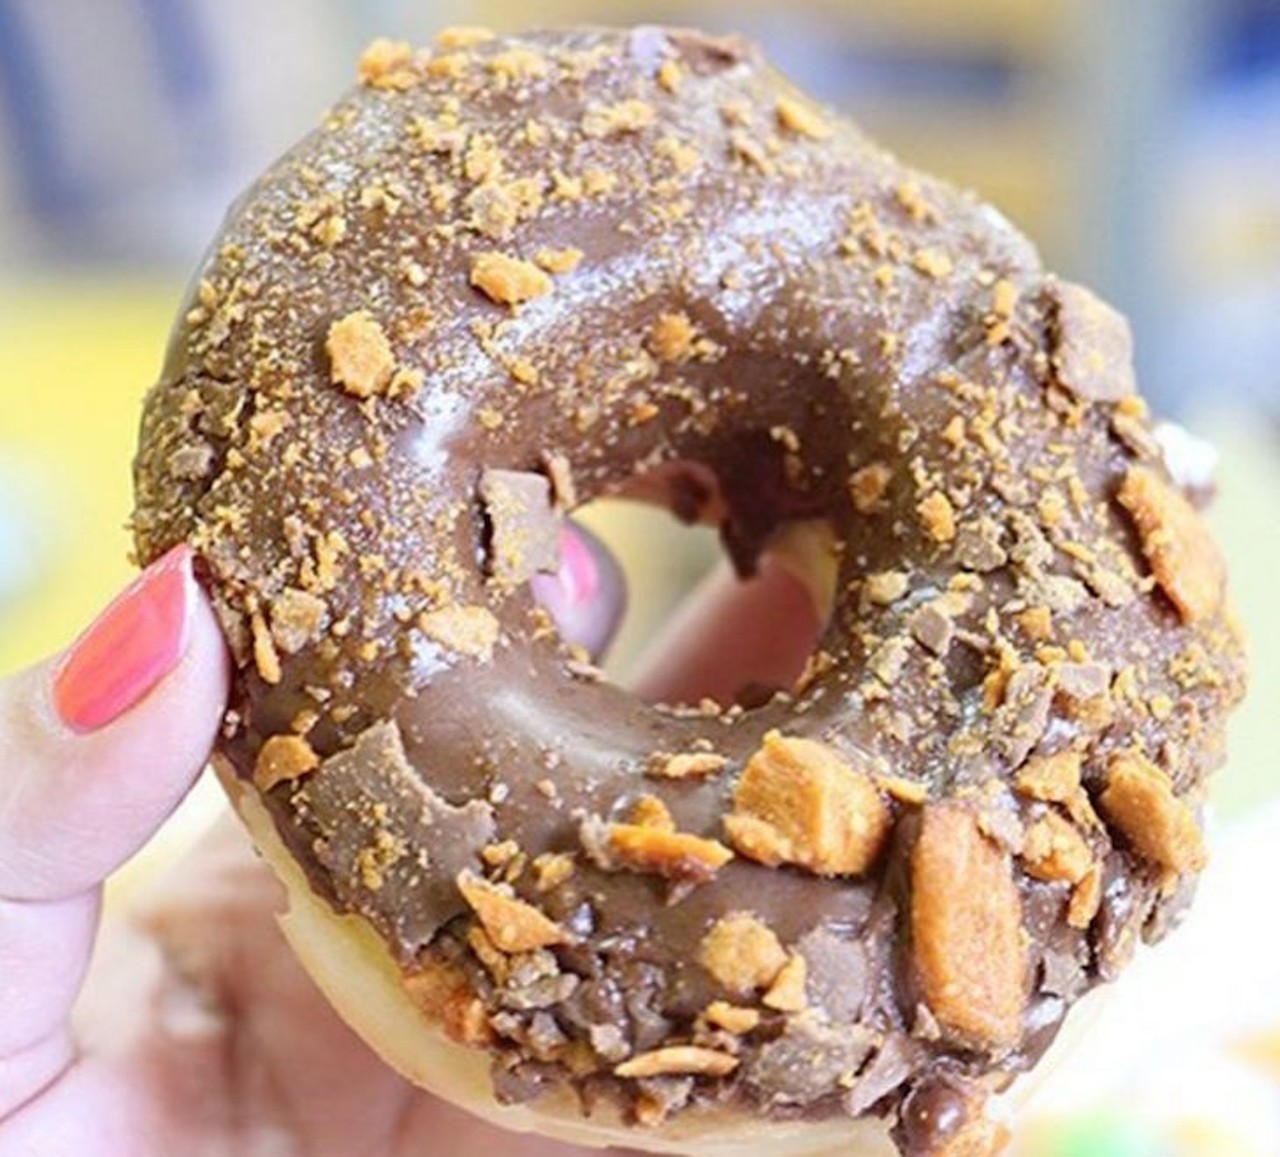 Must try: Butterfinger Donut
Photo via dawncaptures/Instagram